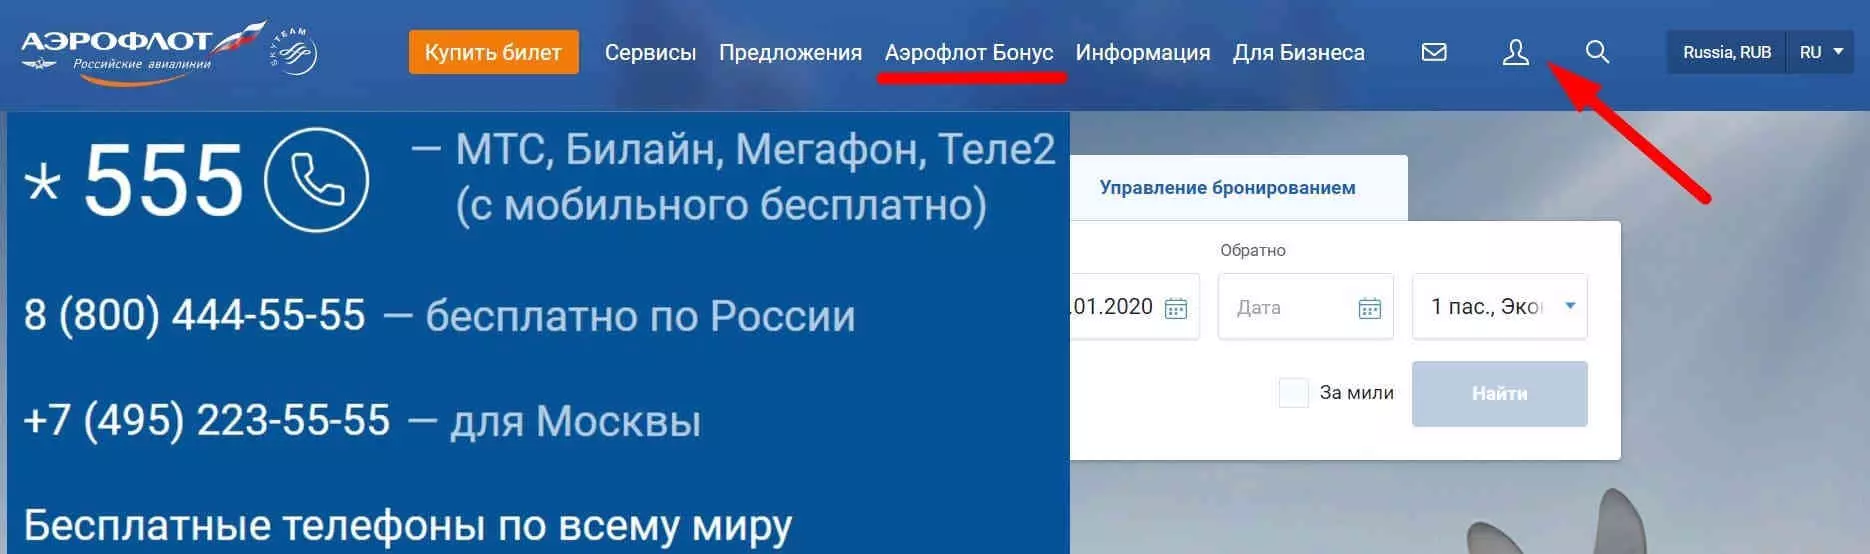 Личный кабинет аэрофлот бонус: вход и регистрация на aeroflot.ru